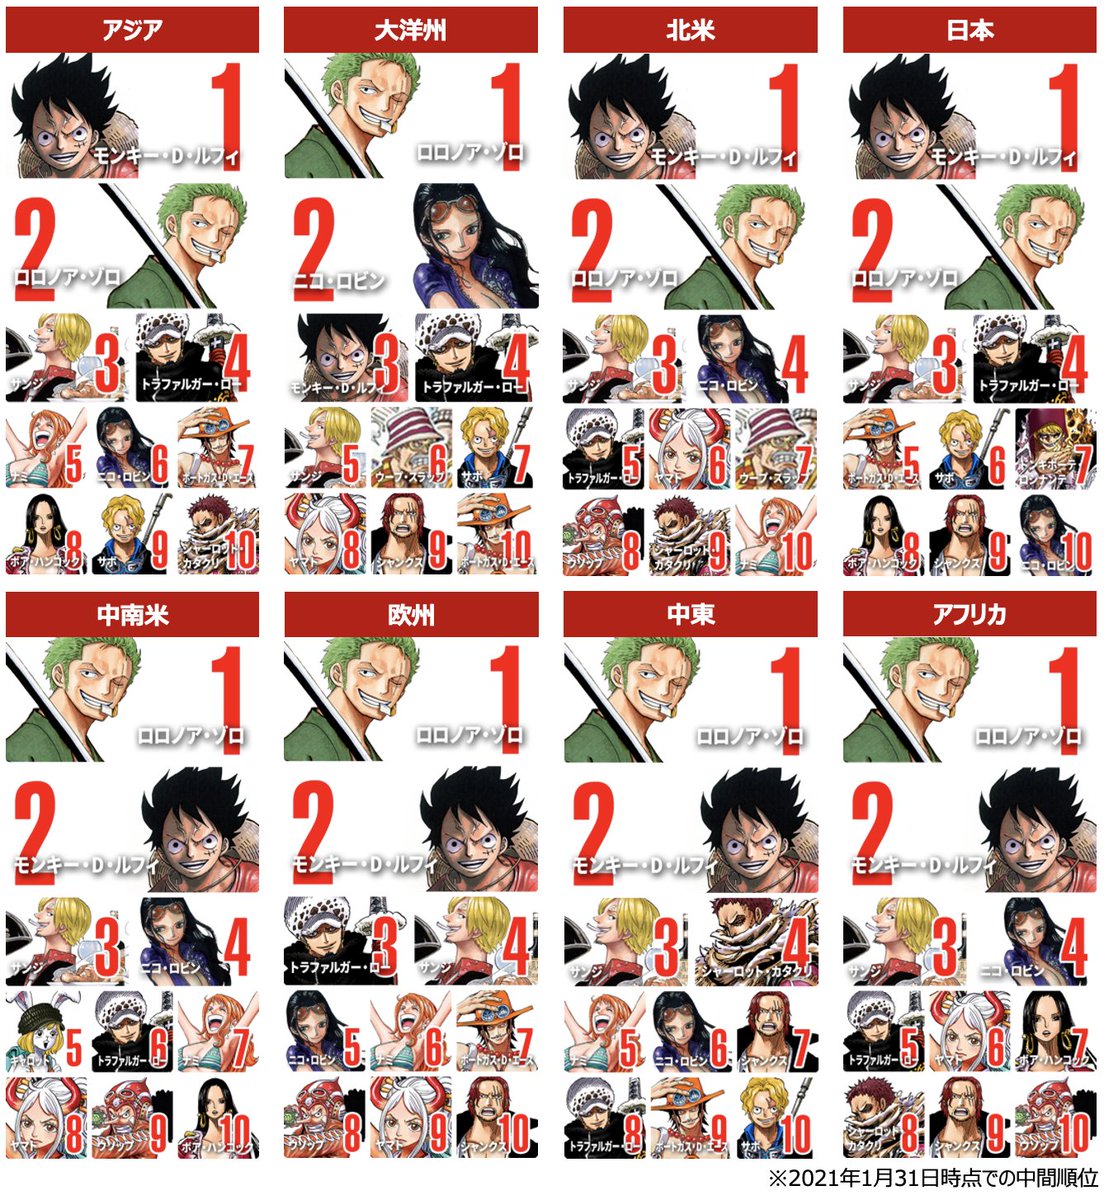 ライブドアニュース 全世界対象 One Piece キャラ人気投票 中間順位を発表 T Co Q6bcjifiwq 1位 ルフィ 2位 ゾロ 3位 サンジ 4位 ロー 5位 エース 6位 ロビン 7位 ナミ 8位 サボ 9位 ハンコック 10位 シャンクス 画像 C 尾田